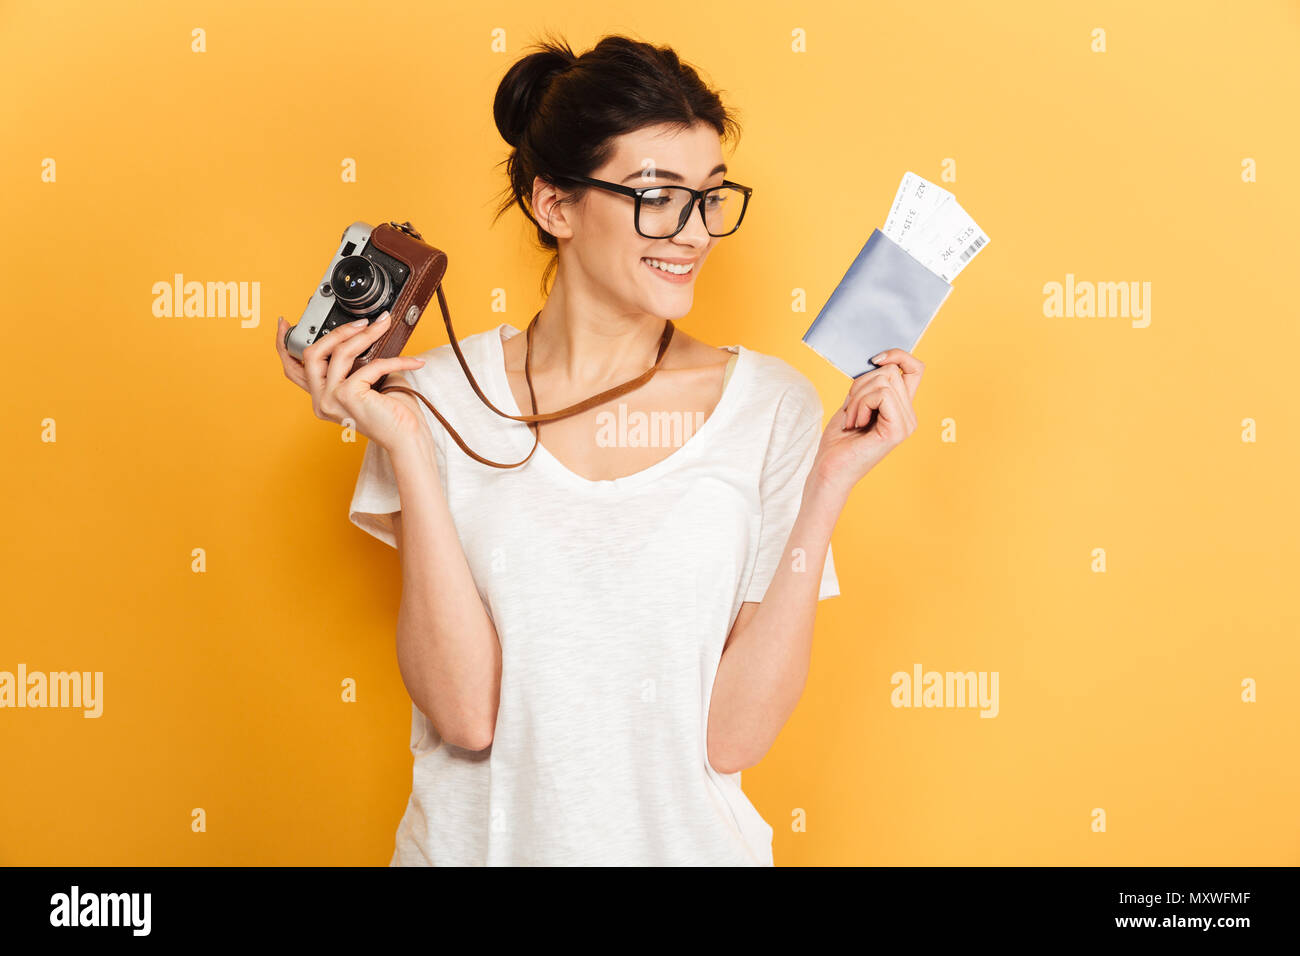 Das Bild der jungen Frau touristische Fotograf Brille auf gelben Hintergrund holding Passport mit Tickets und Kamera isoliert. Suchen asid Stockfoto